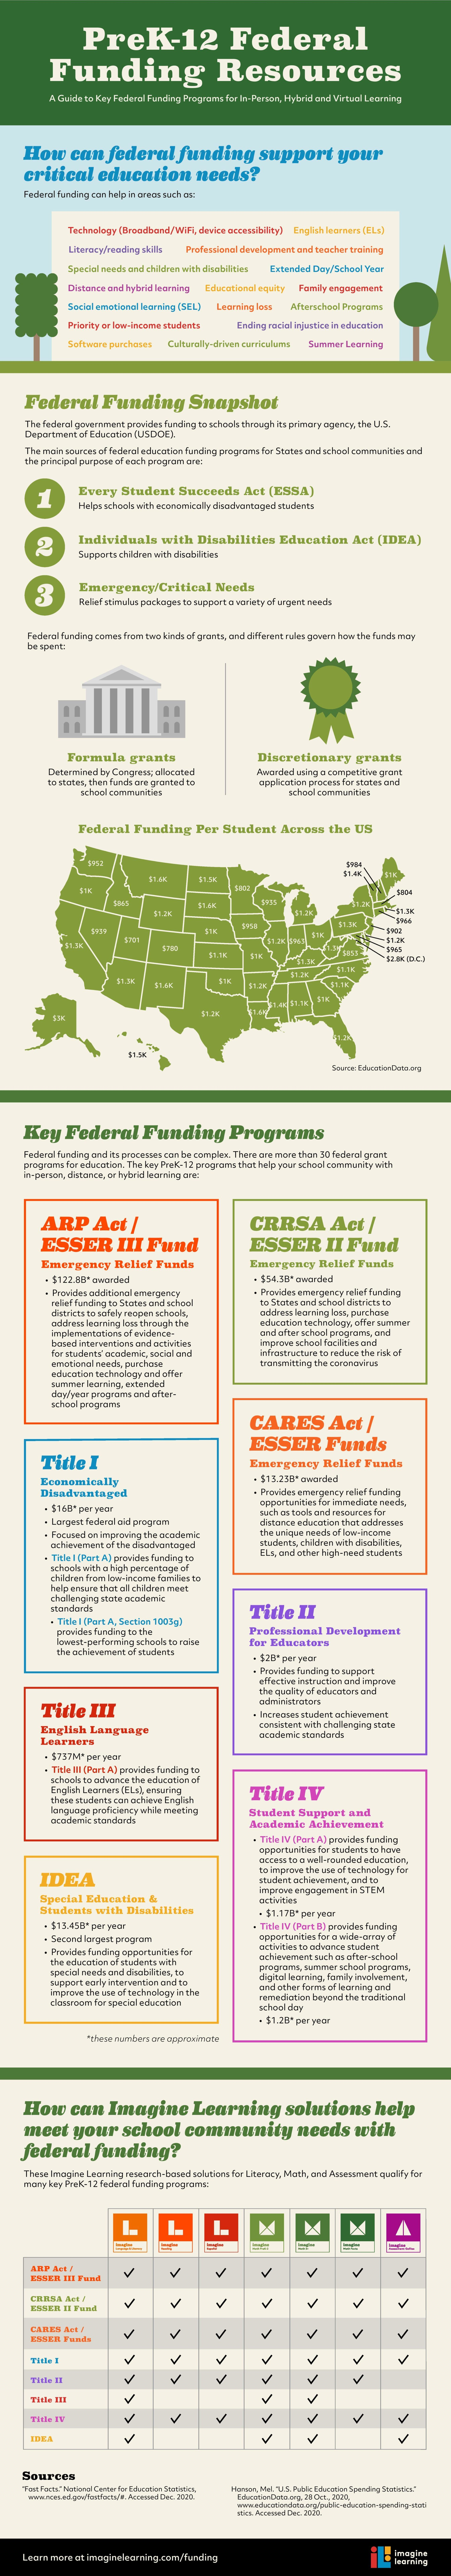 PreK-12 Federal Funding Resources